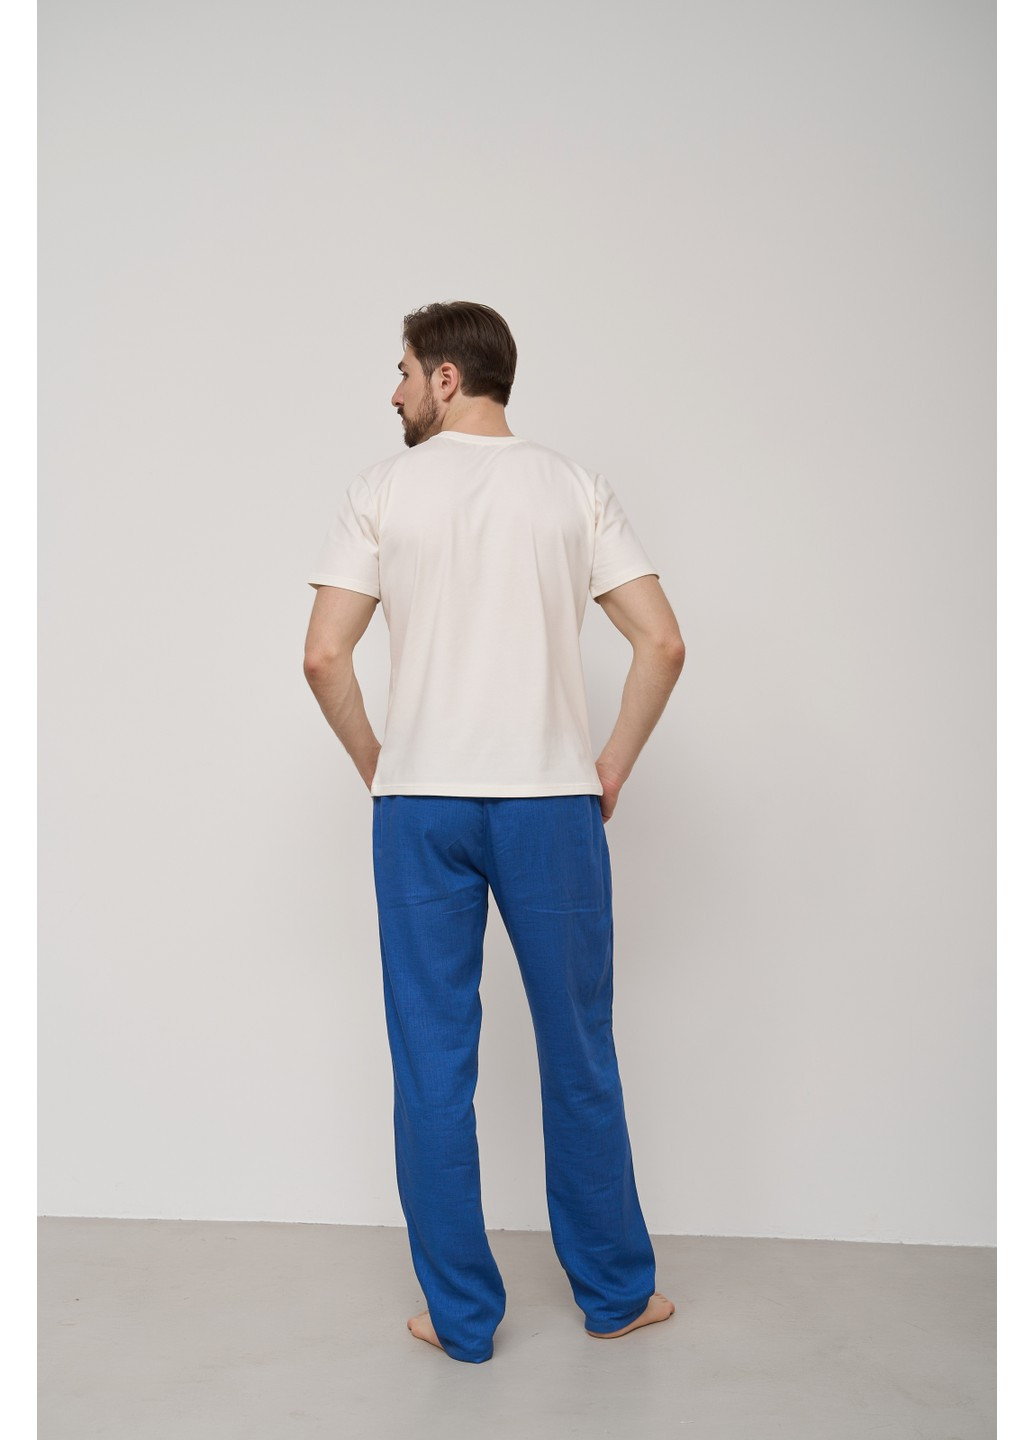 Синие домашние демисезонные прямые брюки Handy Wear